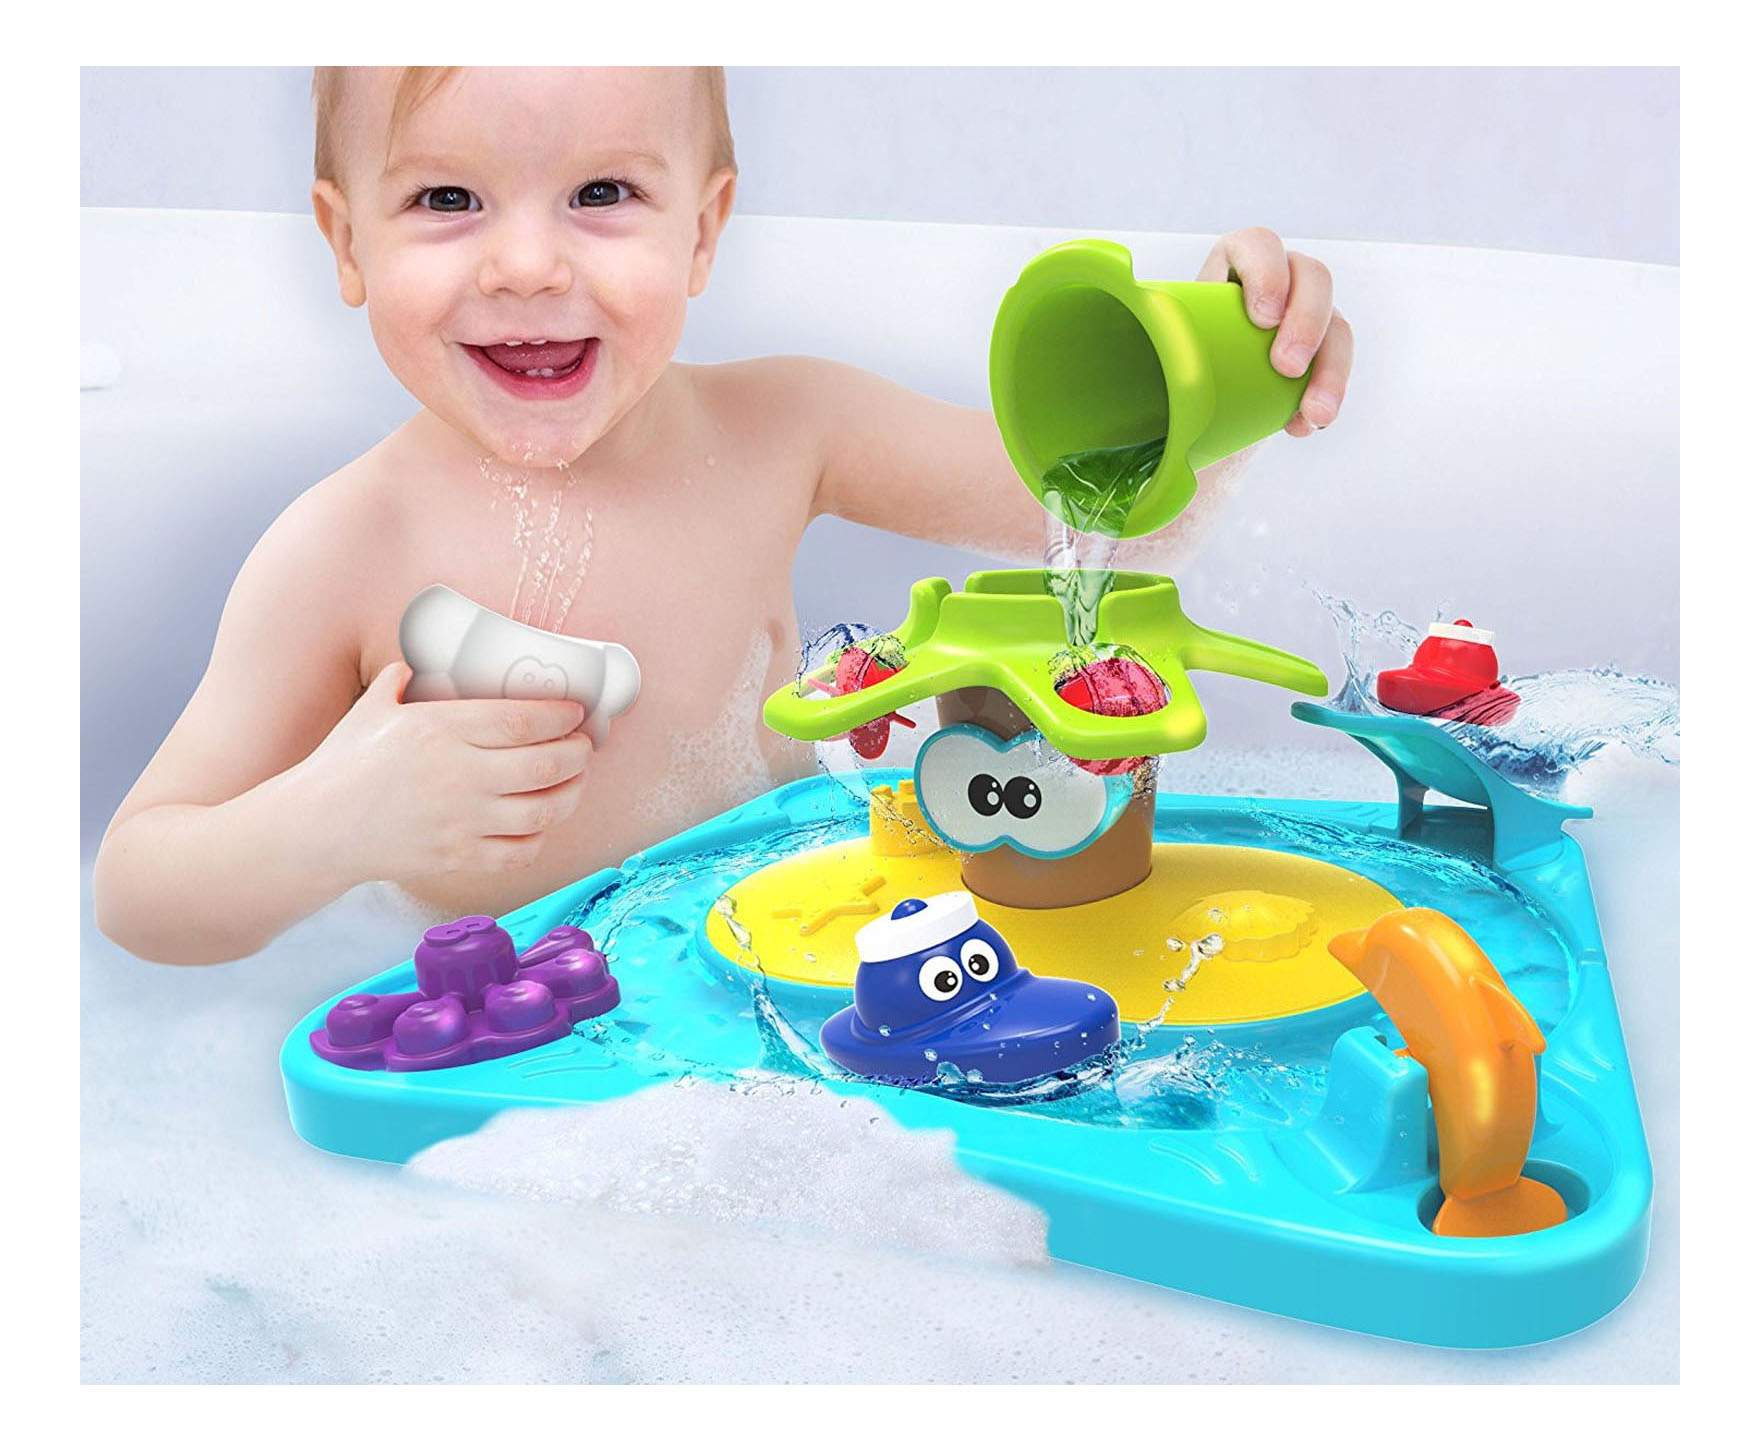 Ванна детей 5 лет. Детская игрушка для ванны. Игрушки для купания малышей. Интересные игрушки для ванной. Игрушки в ванную для детей.